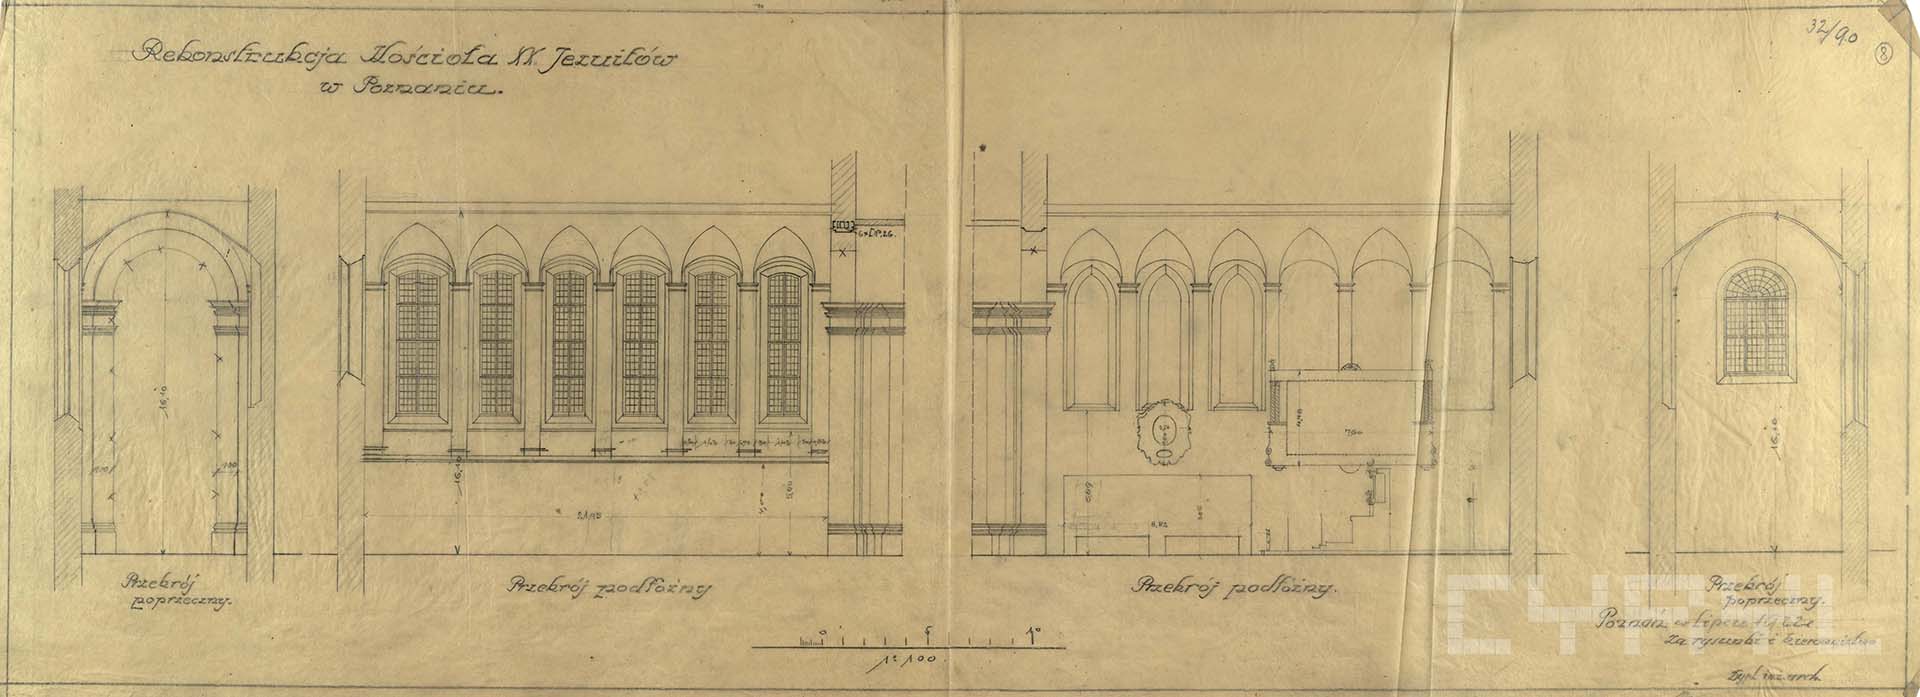 Kościół Jezuitów, przebudowa | Projekty Stefana Cybichowskiego | 1921–1923 | MKZ